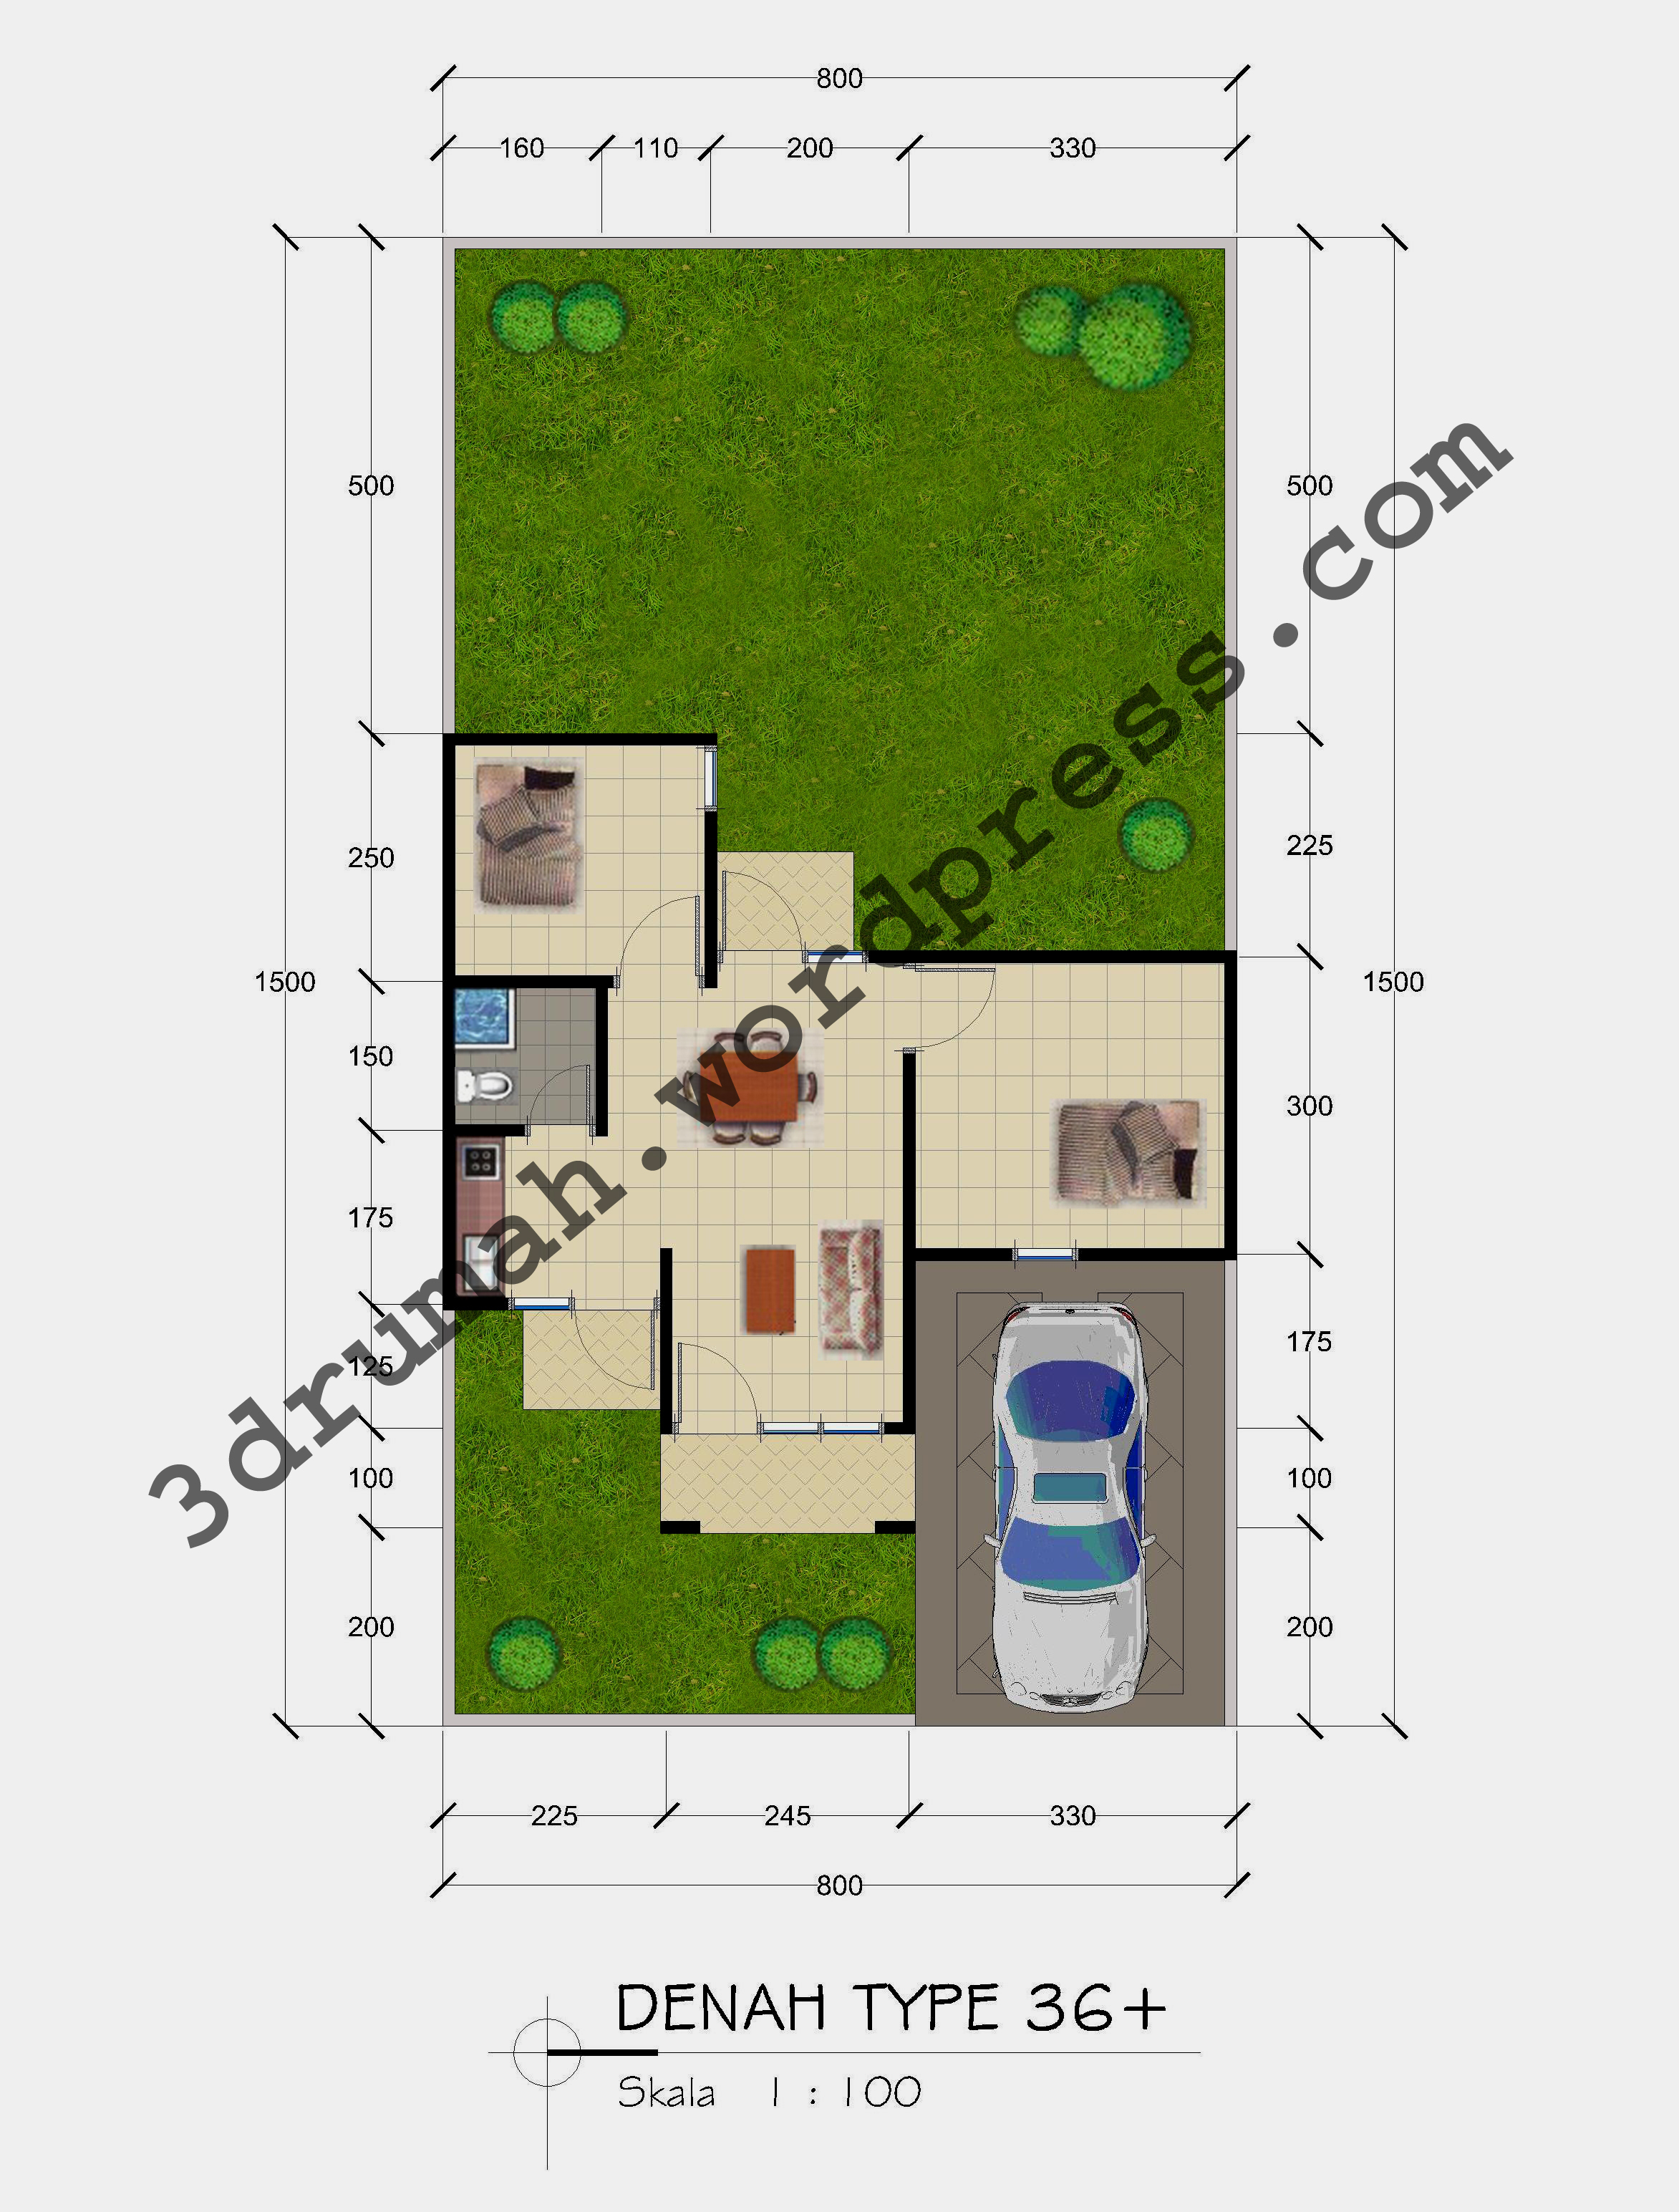 Gambar Desain Interior Rumah Minimalis Type 36 120 Terbaru Desain